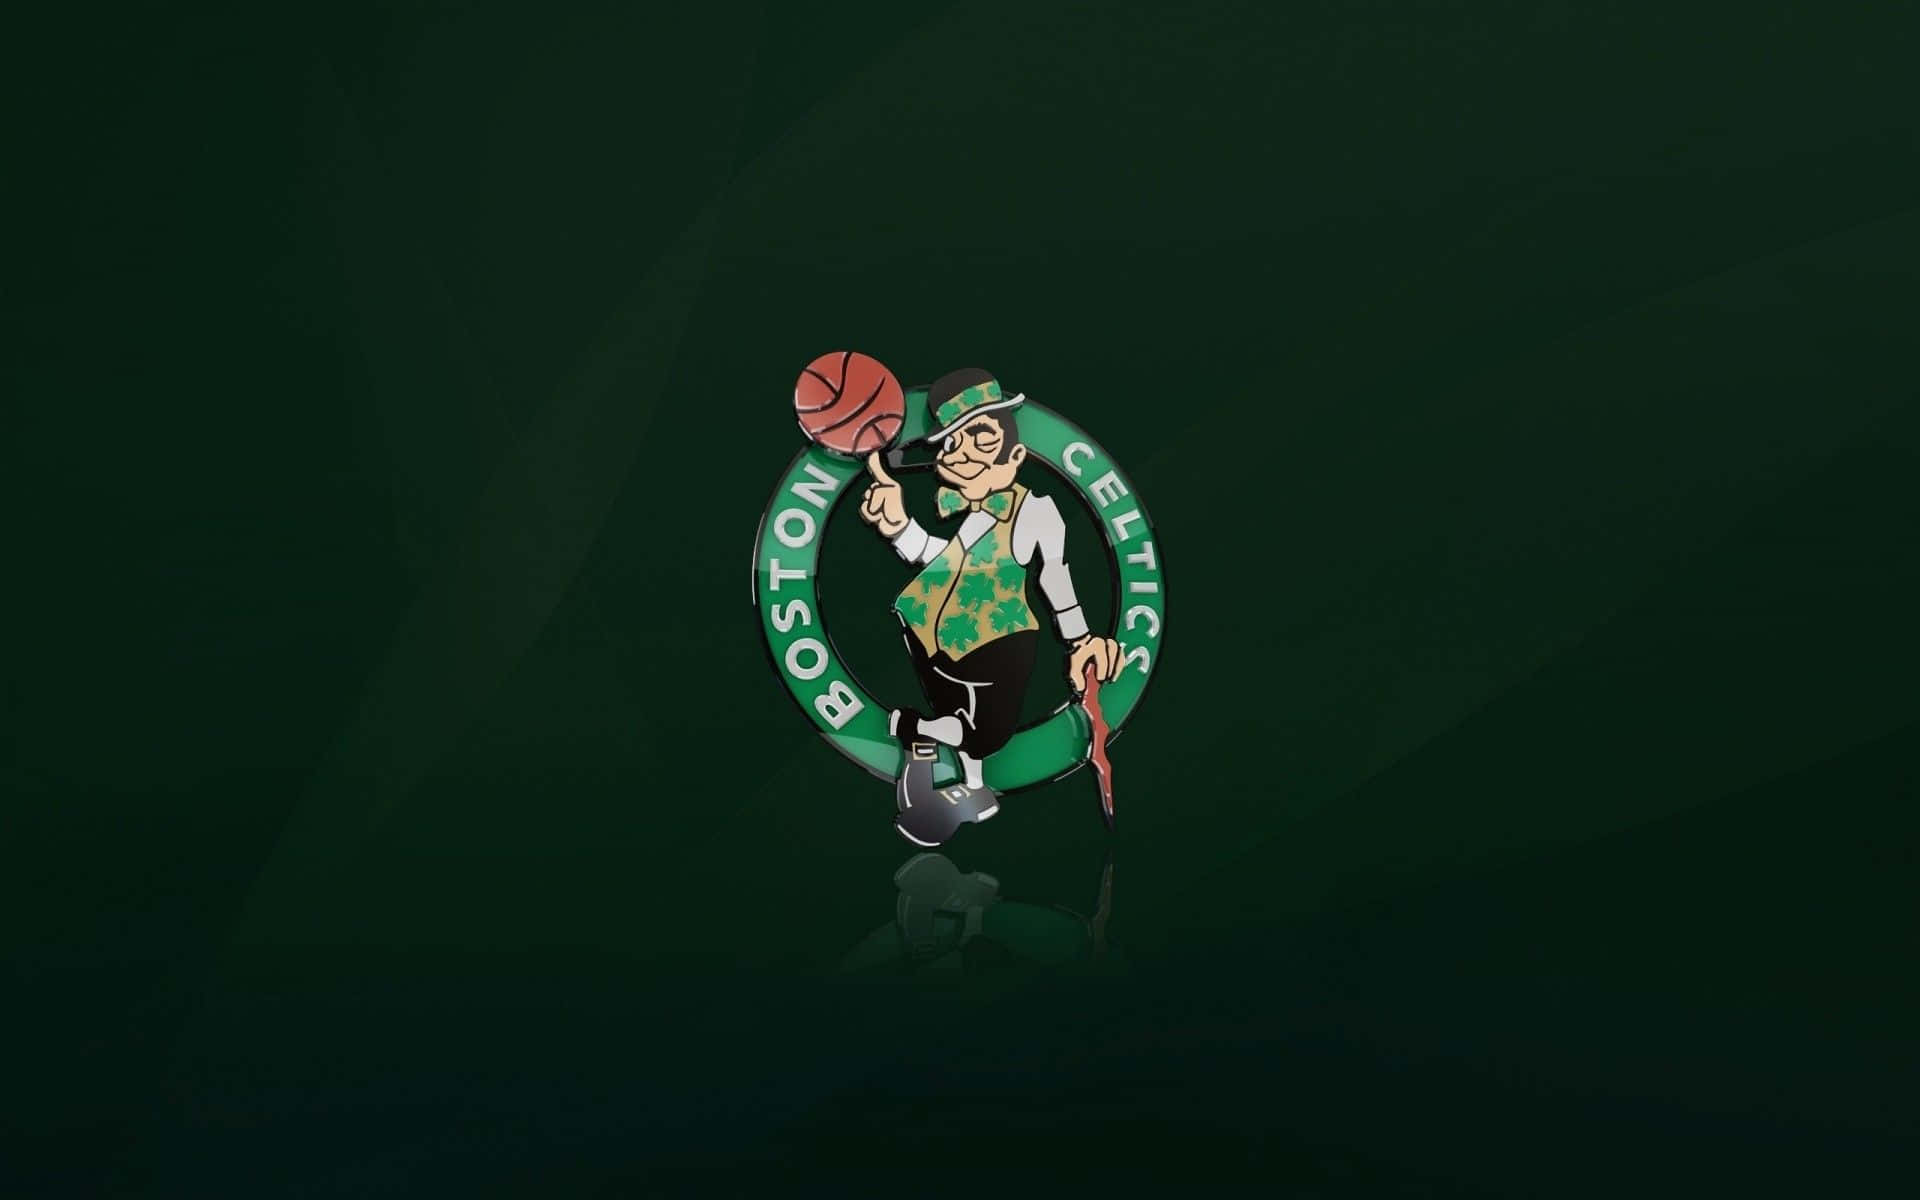 Imagendel Logotipo De Los Boston Celtics. Fondo de pantalla